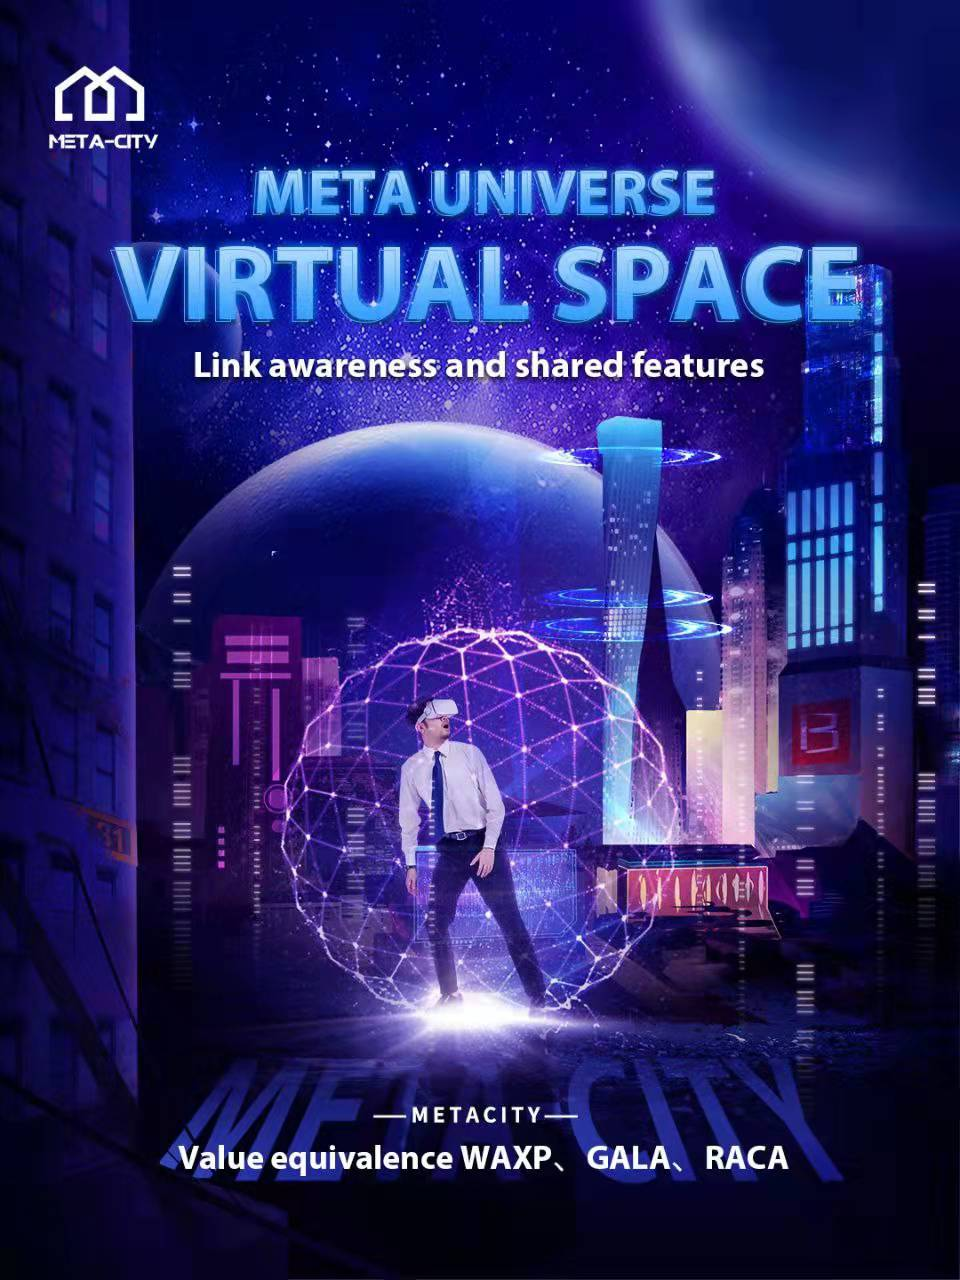 MECT-VR 기술로 구축된 최첨단 메타 우주 생태계